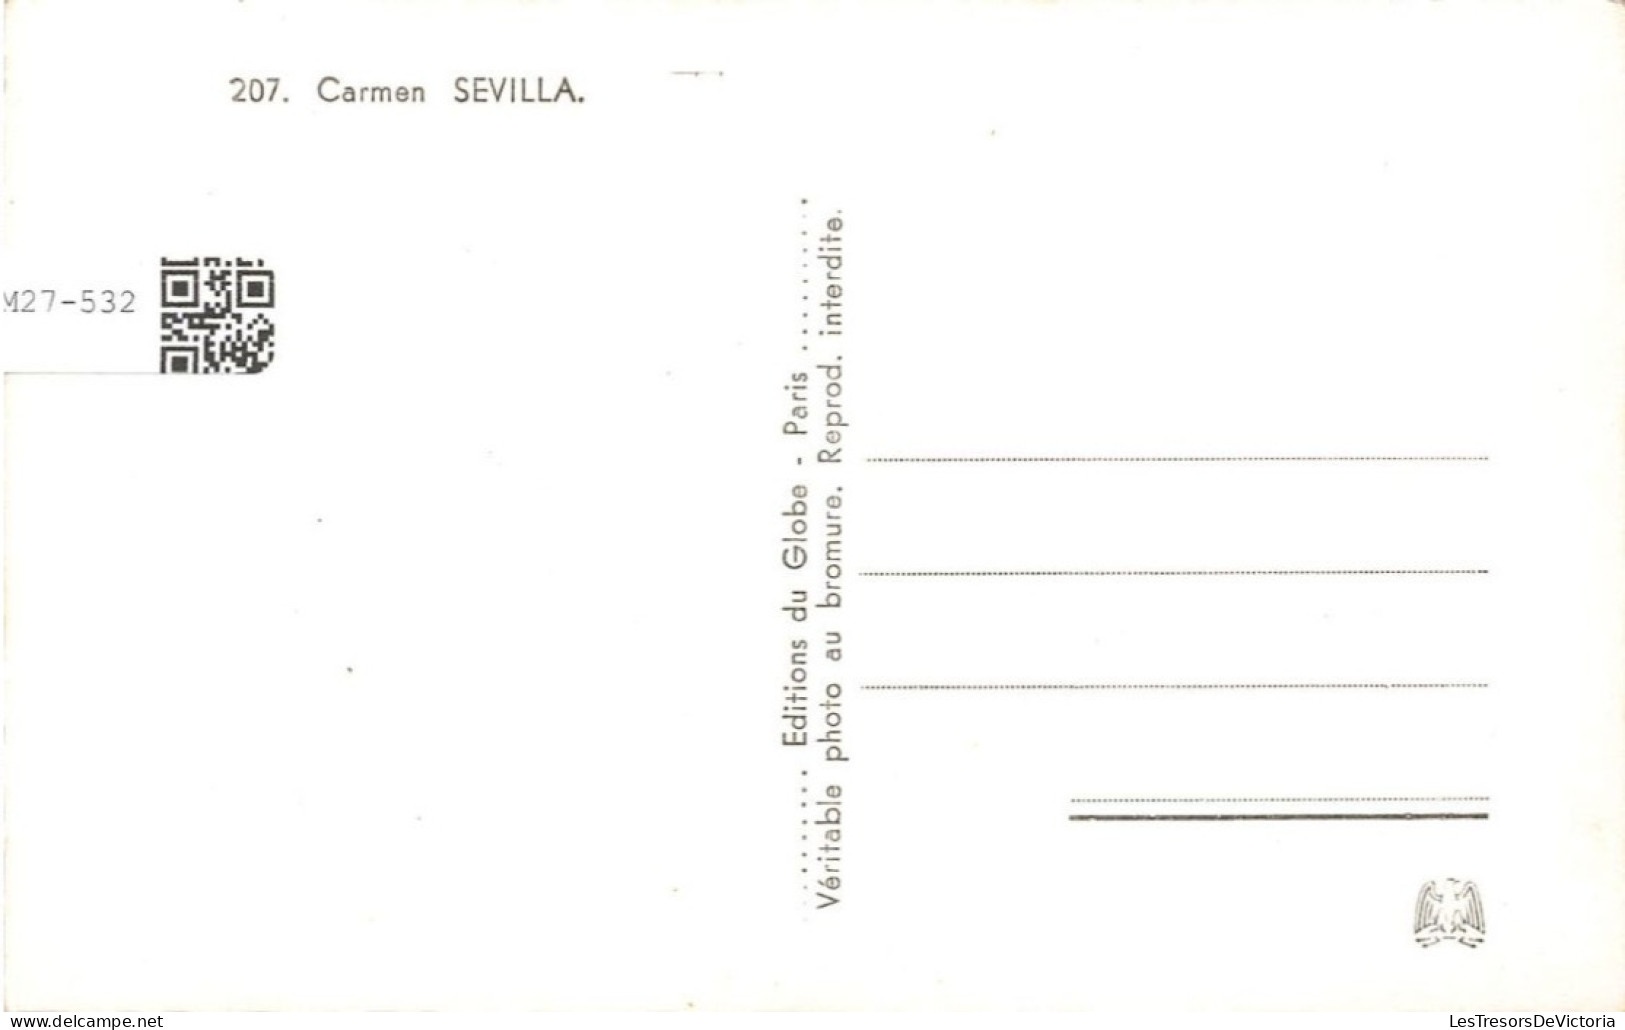 CELEBRITE - Carmen Sevilla - Actrice Espagnole - Carte Postale - Berühmt Frauen